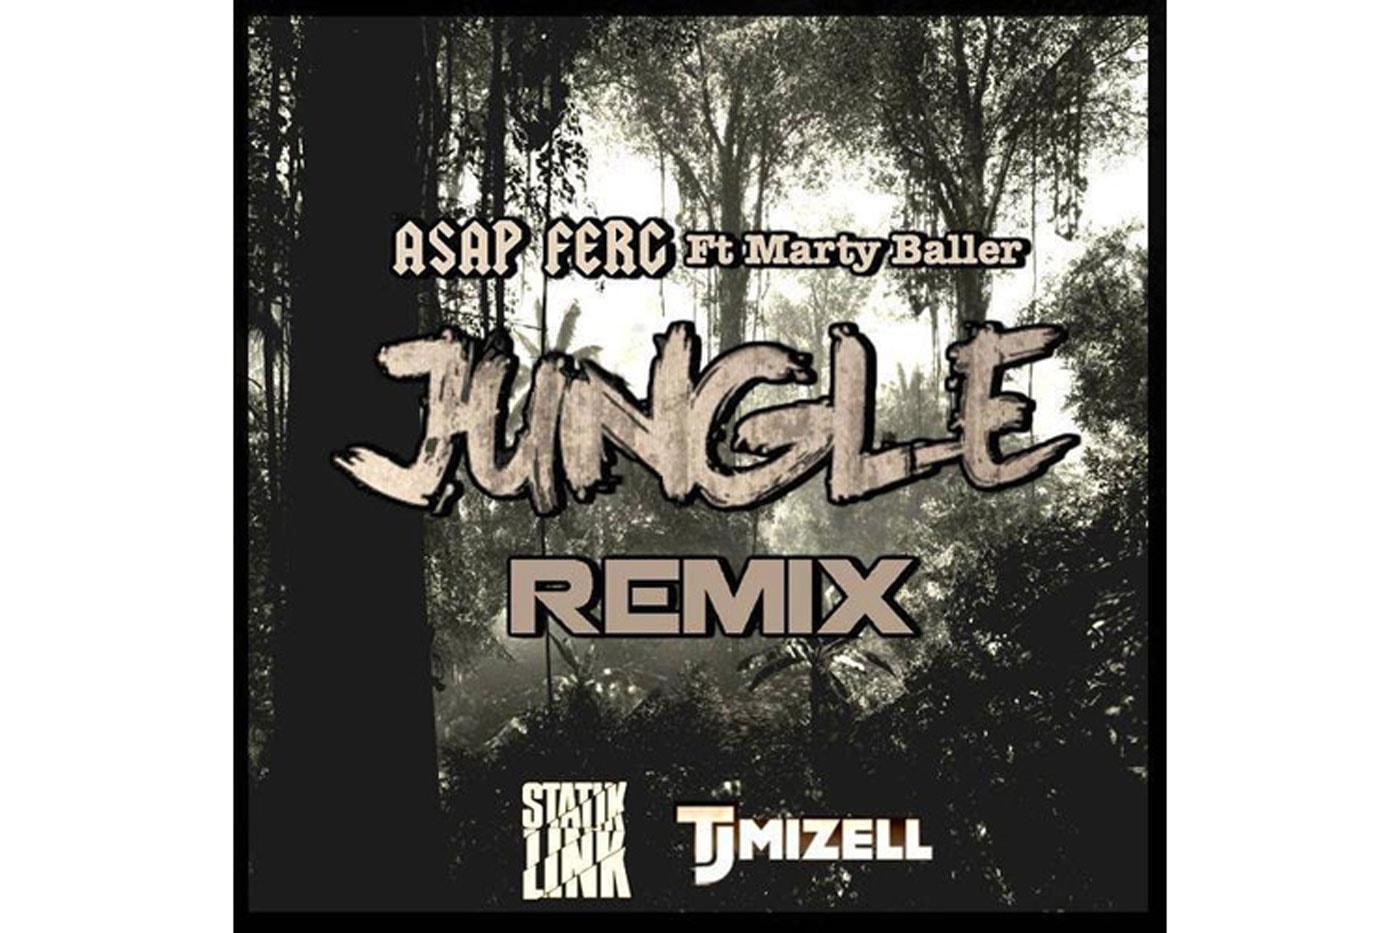 Jam Master Jay's Son TJ Mizell Remixes A$AP Ferg & Marty Baller's "Jungle"